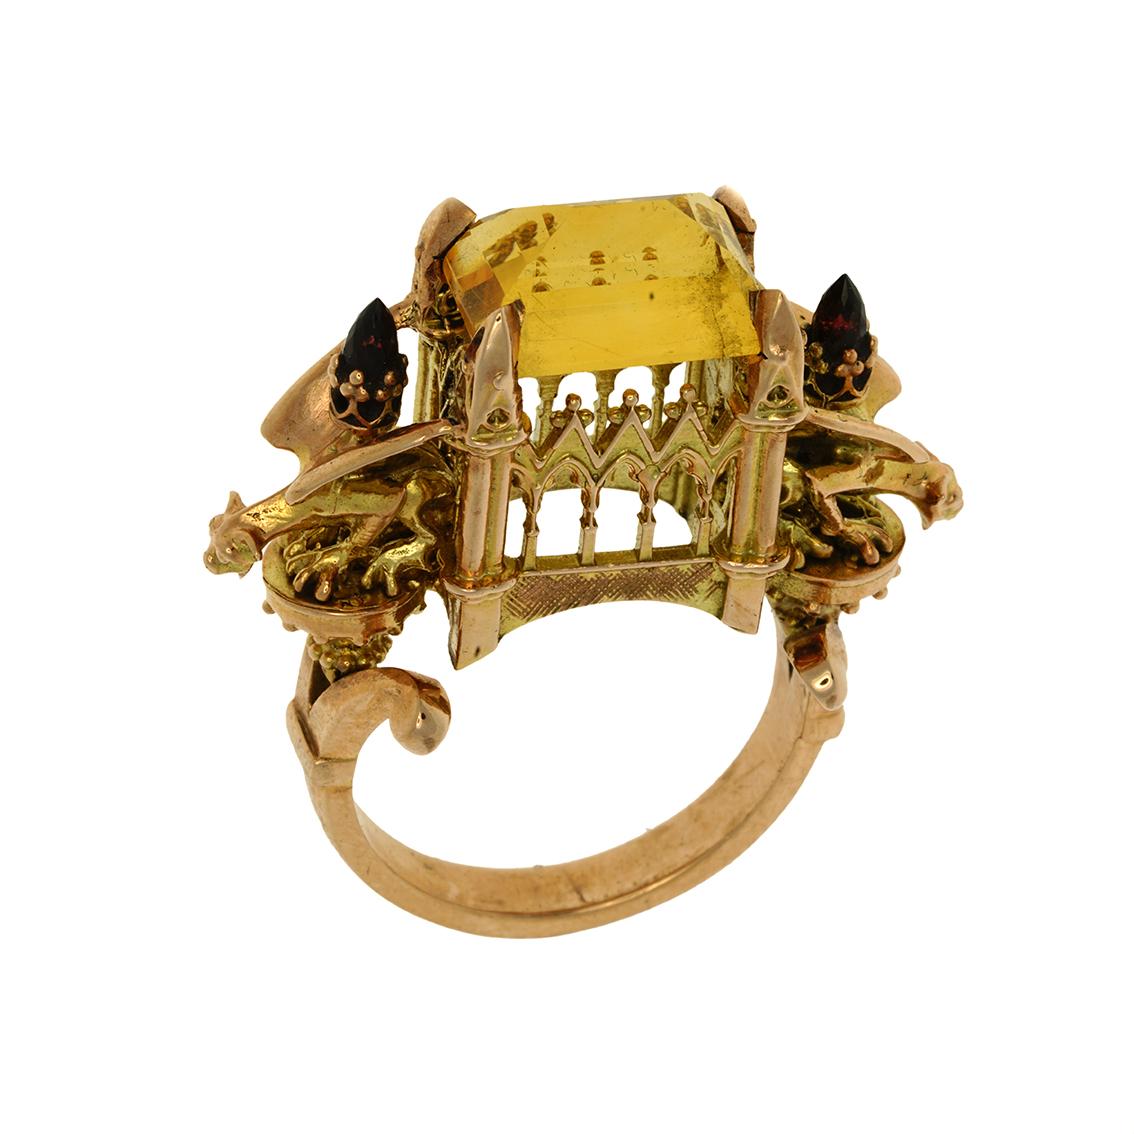 Der Ring Euphoric Triumph ist ein leidenschaftliches Stück. Dieser schillernde Ring ist ein Unikat und passt in Größe 7 3/4 (australische & britische Größe P 1/2). 

Dieser handgefertigte Ring aus 9-karätigem Gelbgold zeigt einen strahlenden Citrin